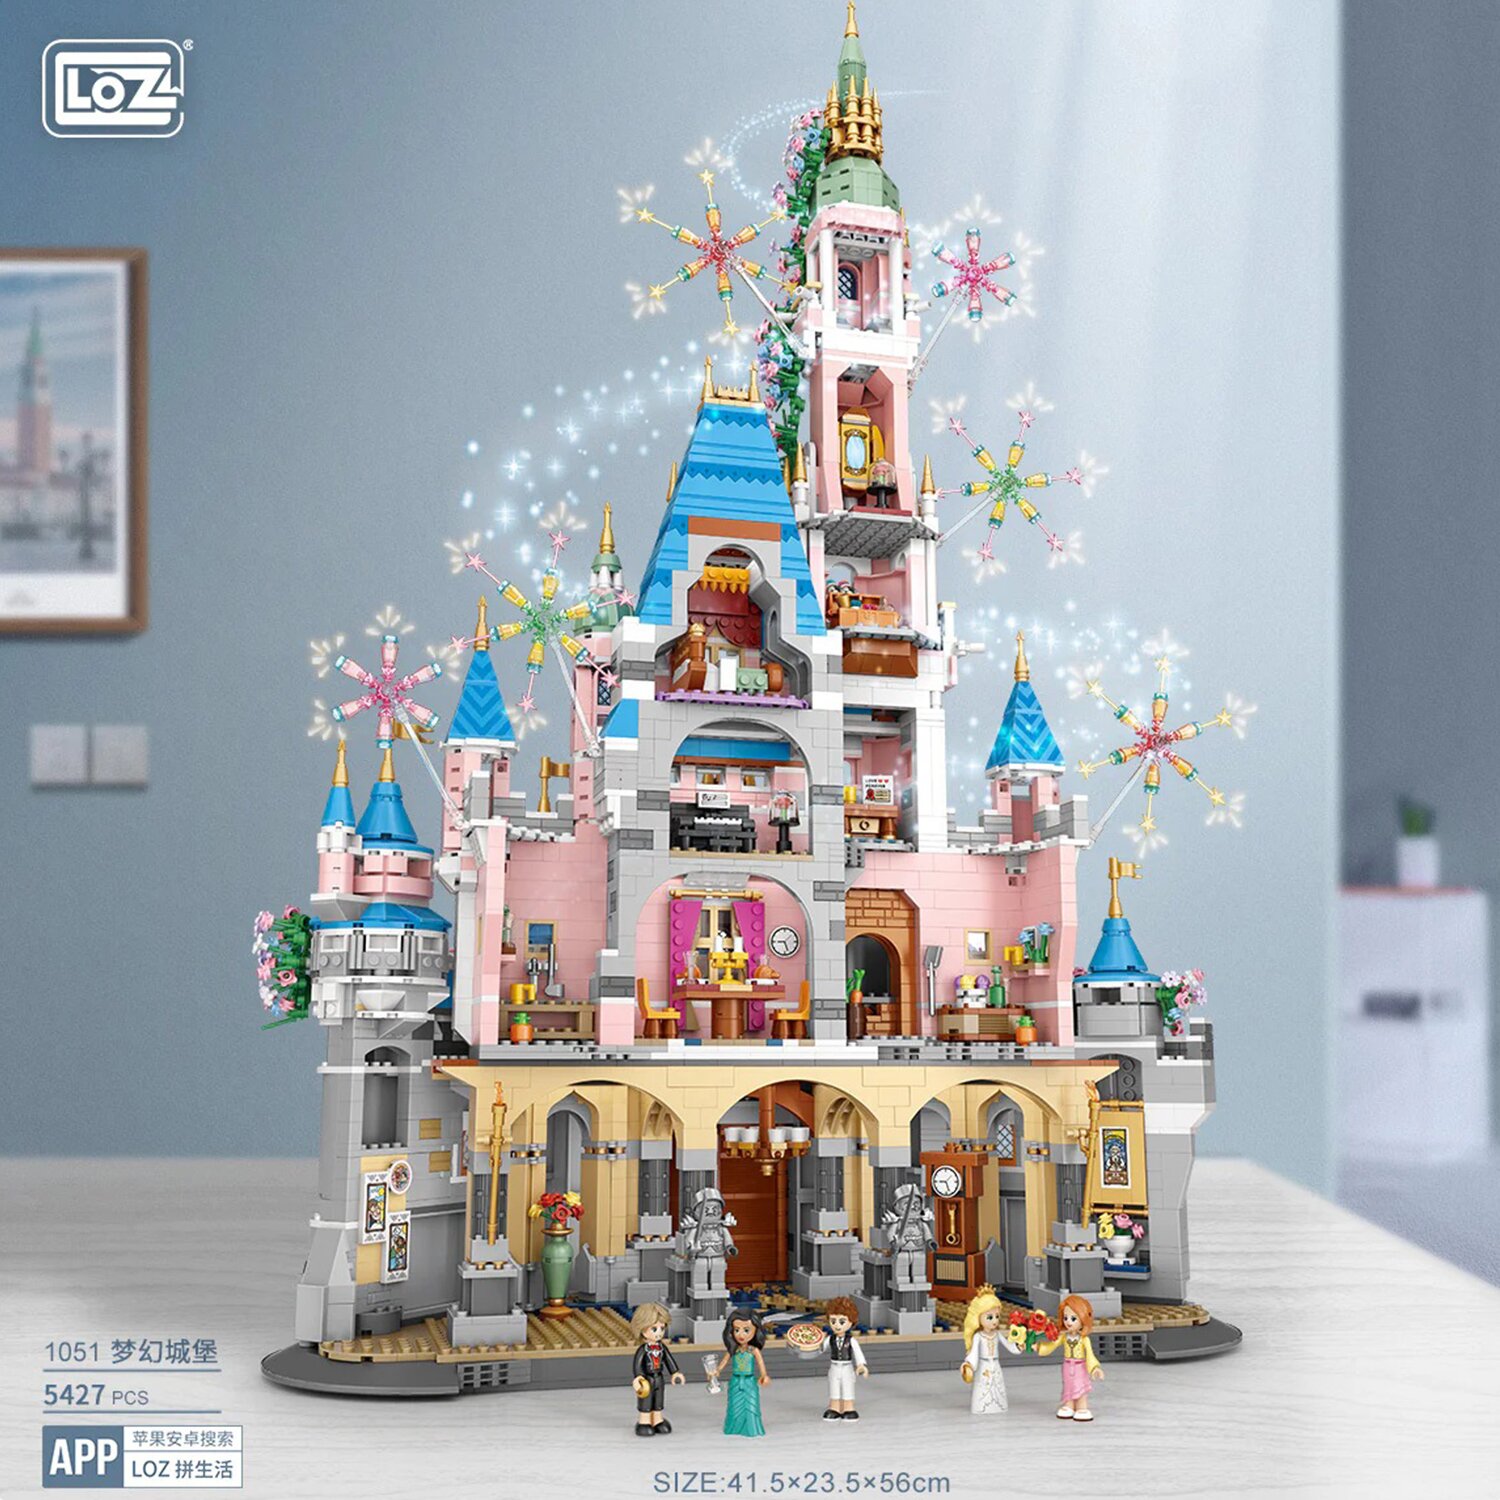 Loz LOZ Mini Blocks - Fantasy Castle Building Bricks Set 40 x 28 x 15 cm